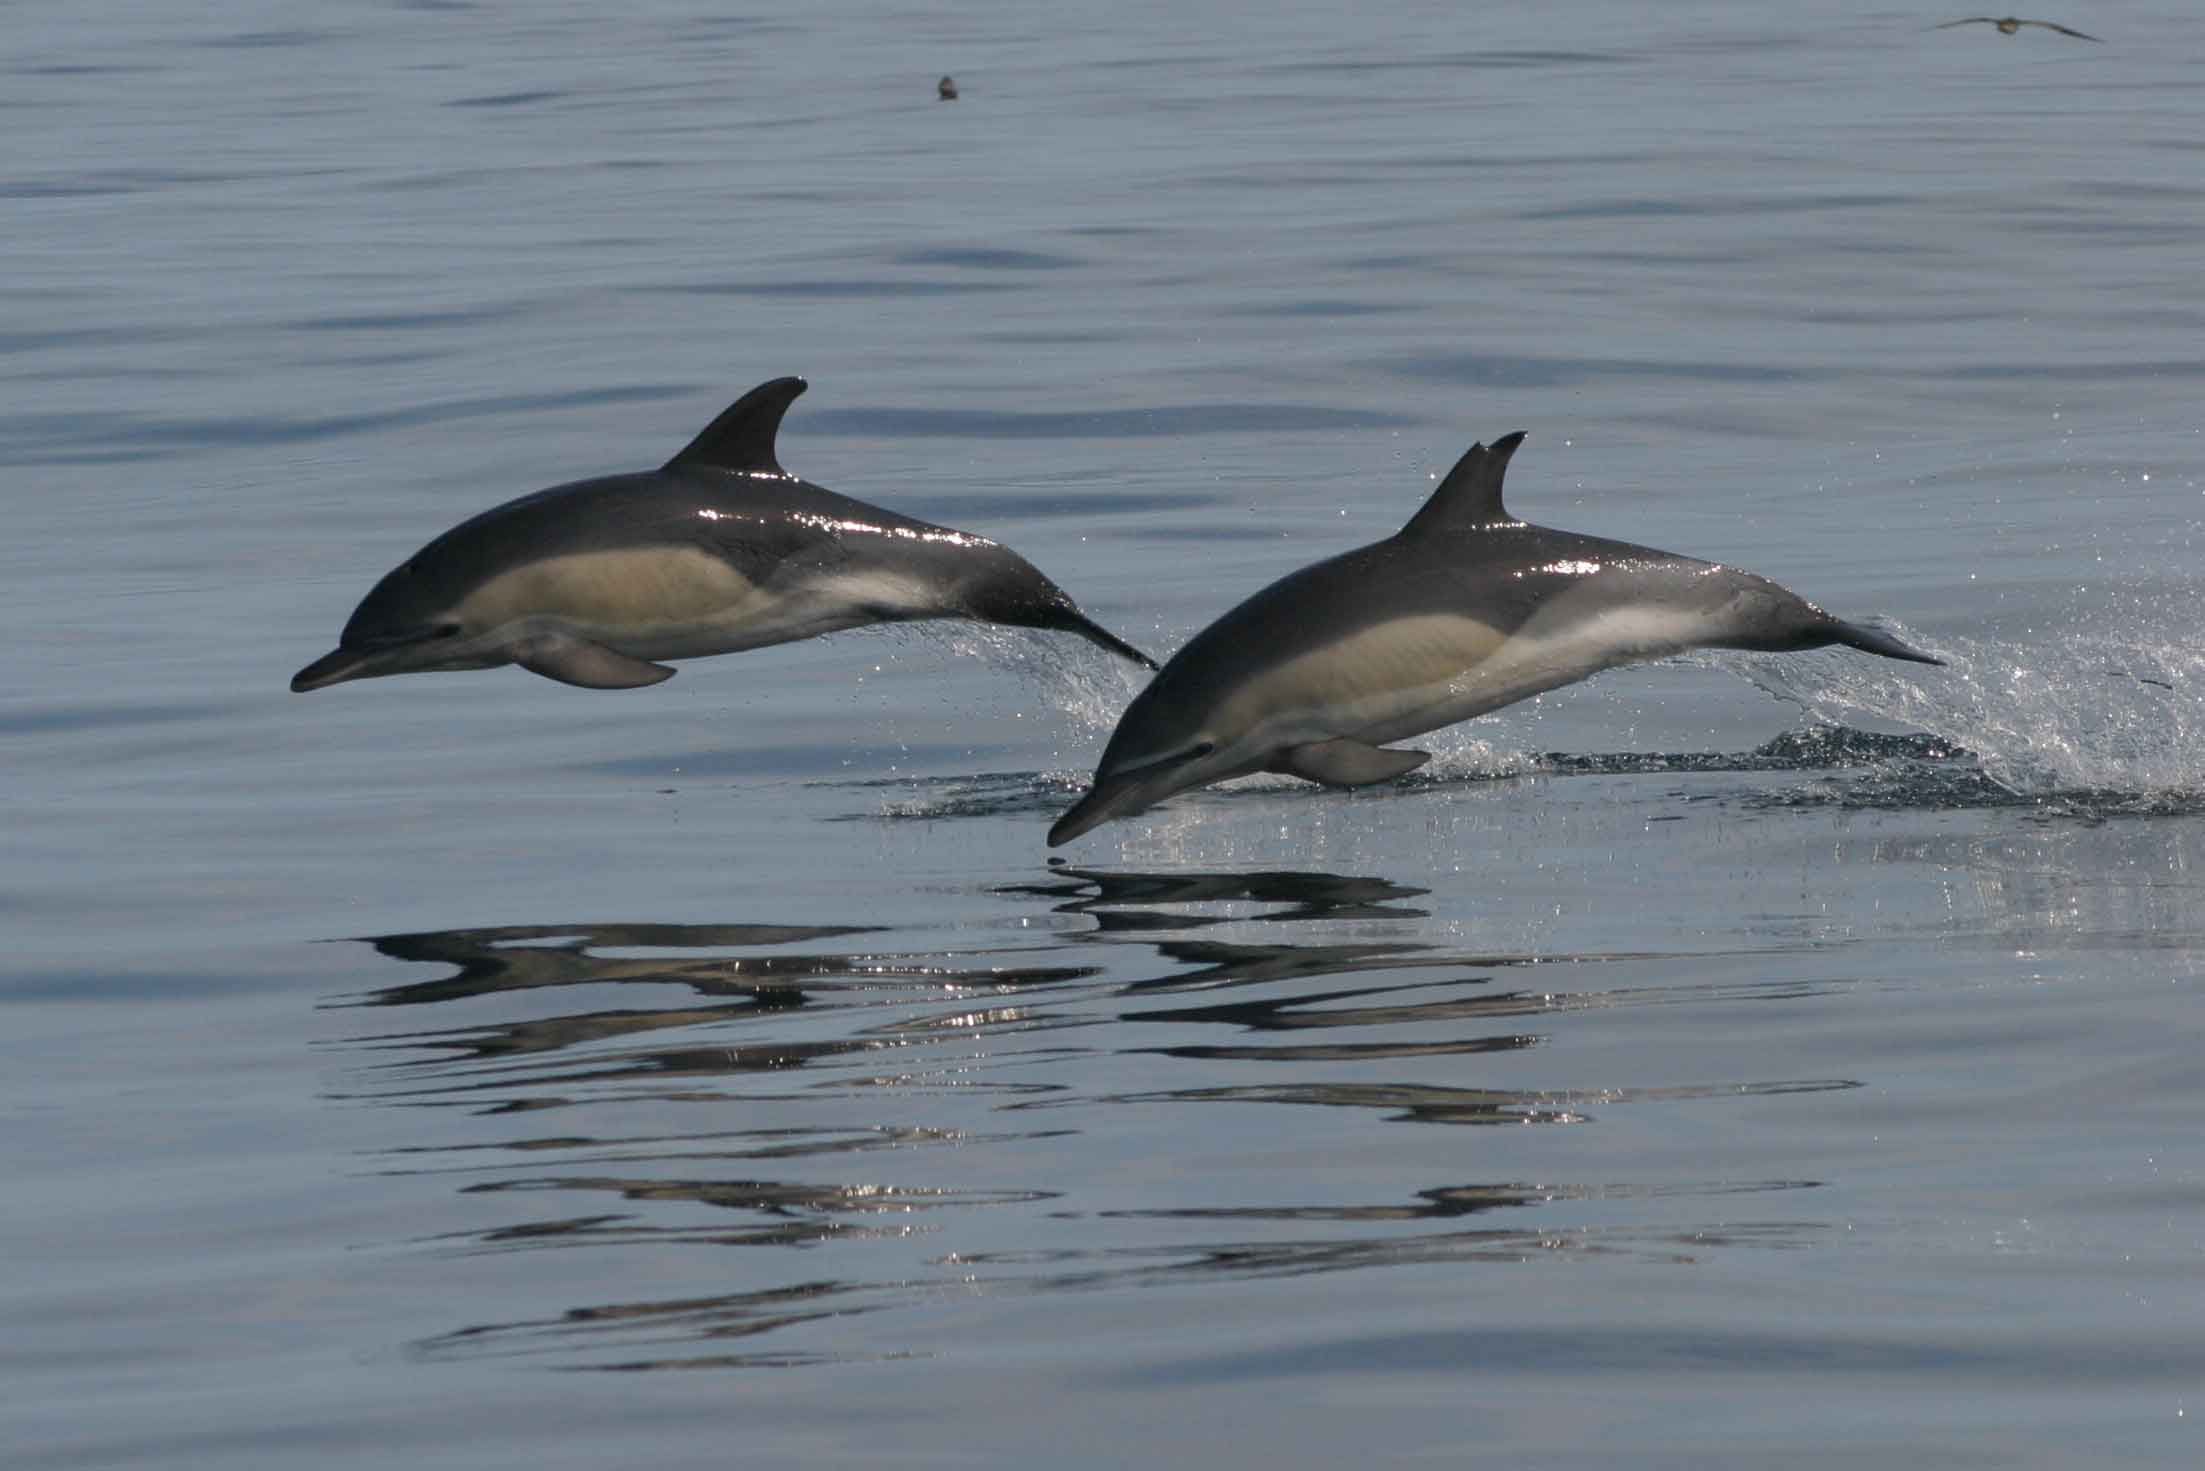 Deux dauphins communs sautant hors de l’eau.